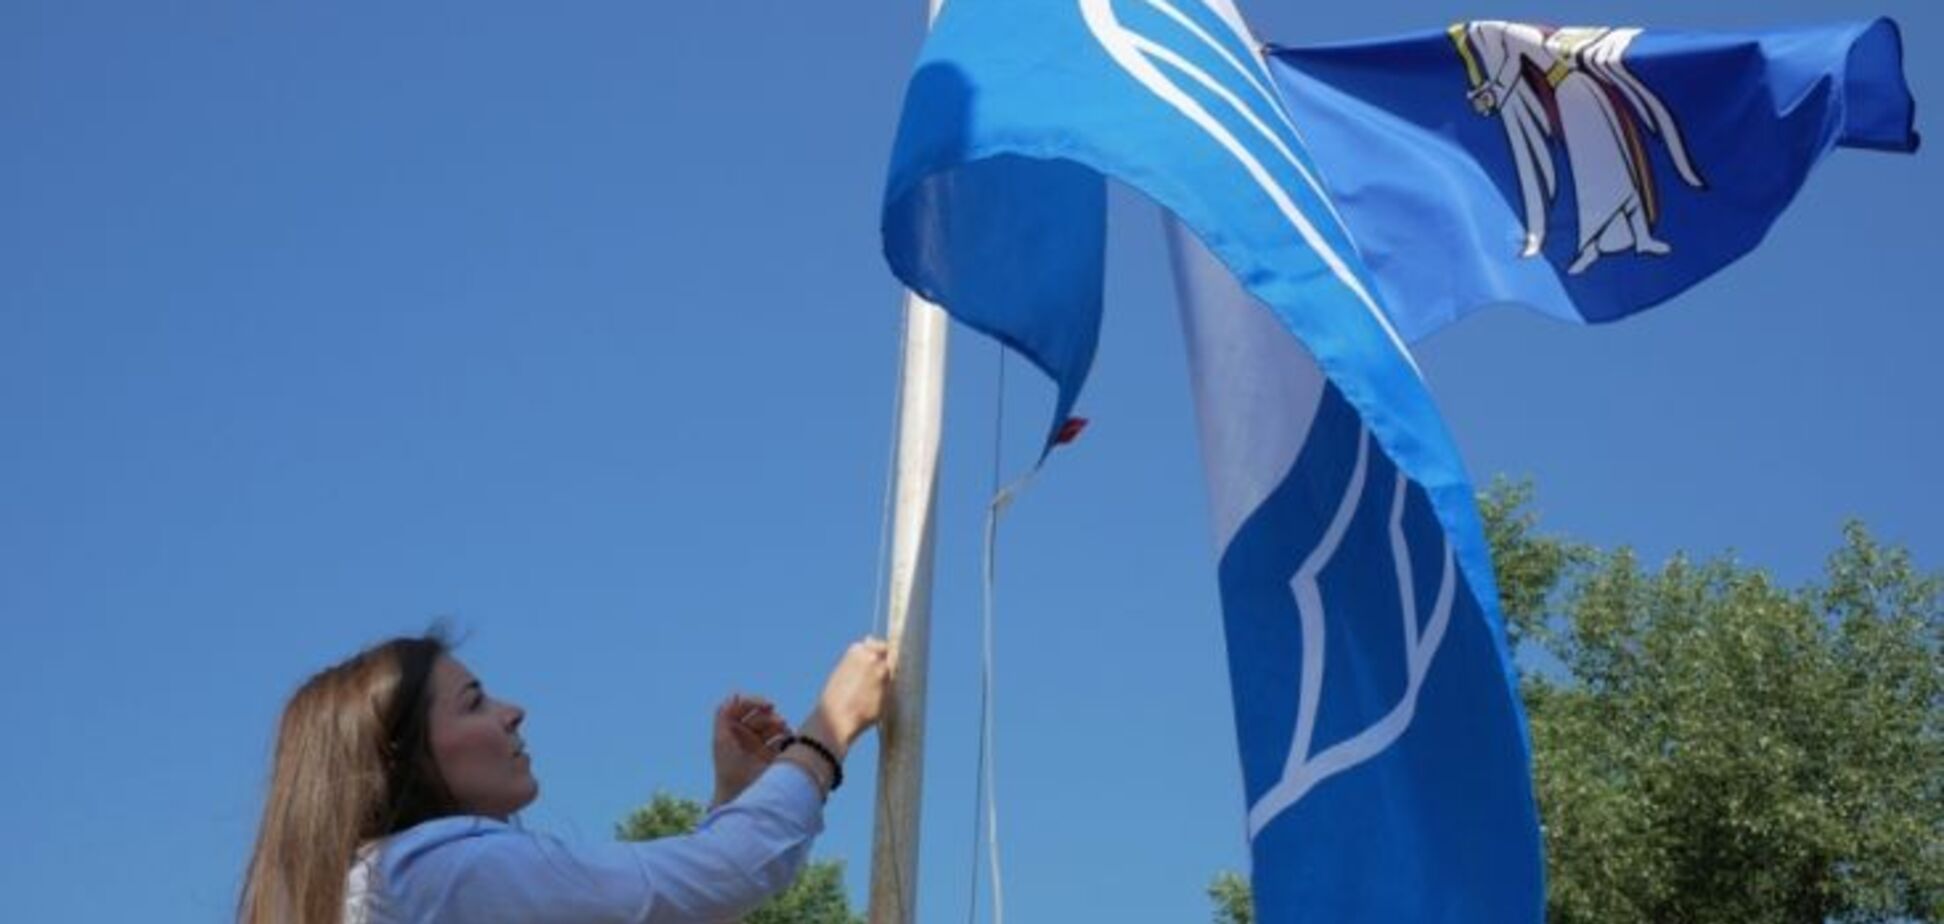 Вісім київських пляжів можуть отримати 'Блакитний прапор' - КМДА